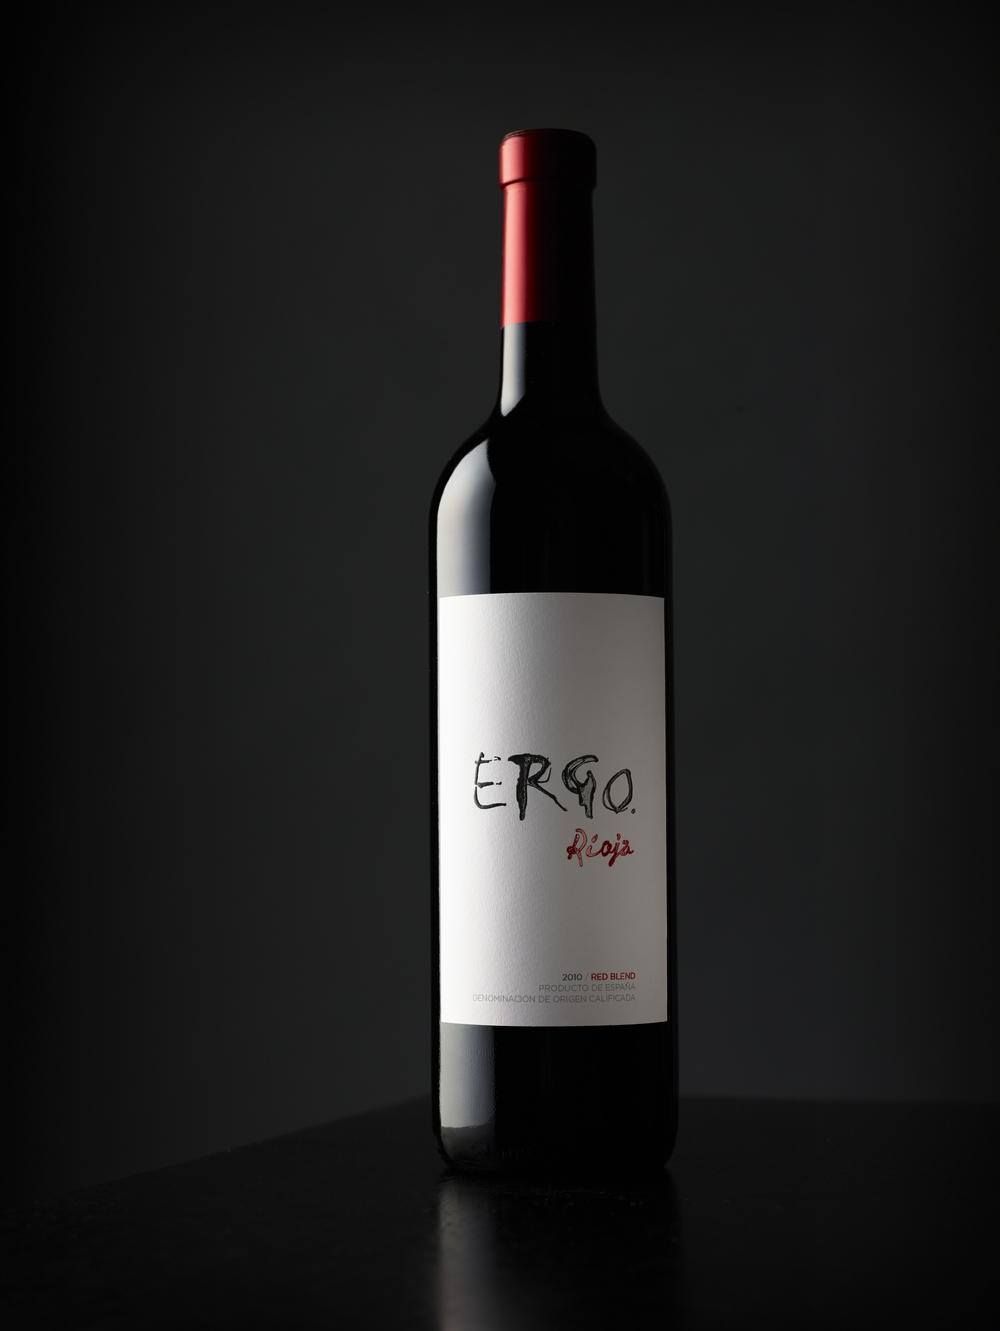  Ergo Rioja 2010/ Red Blend Producto De Espana 750ml 